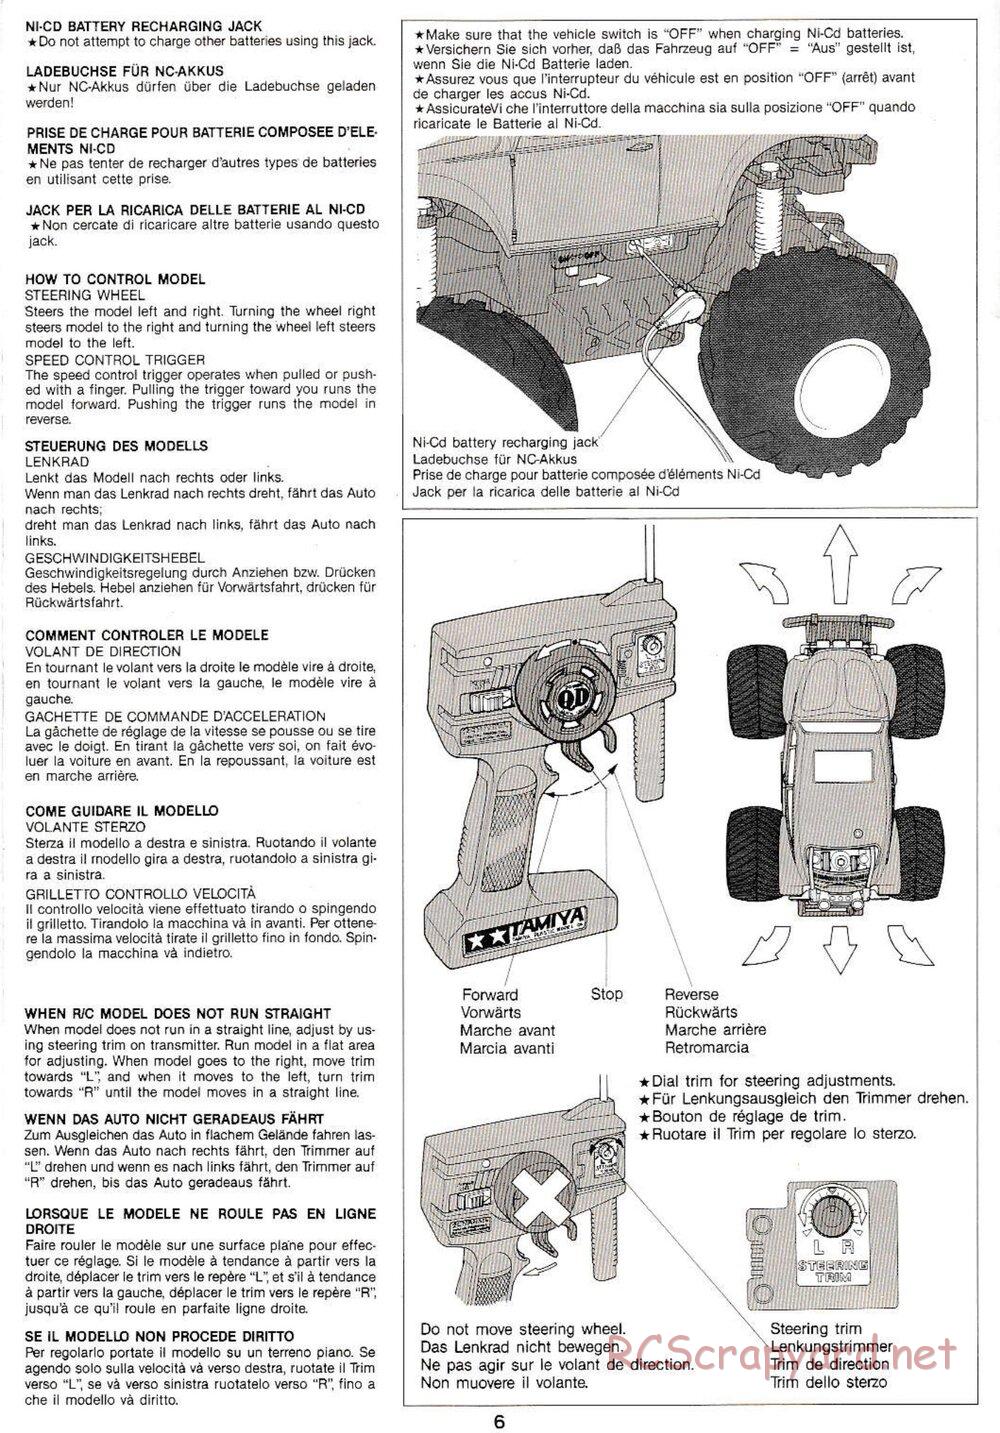 Tamiya - Monster Beetle QD Chassis - Manual - Page 6